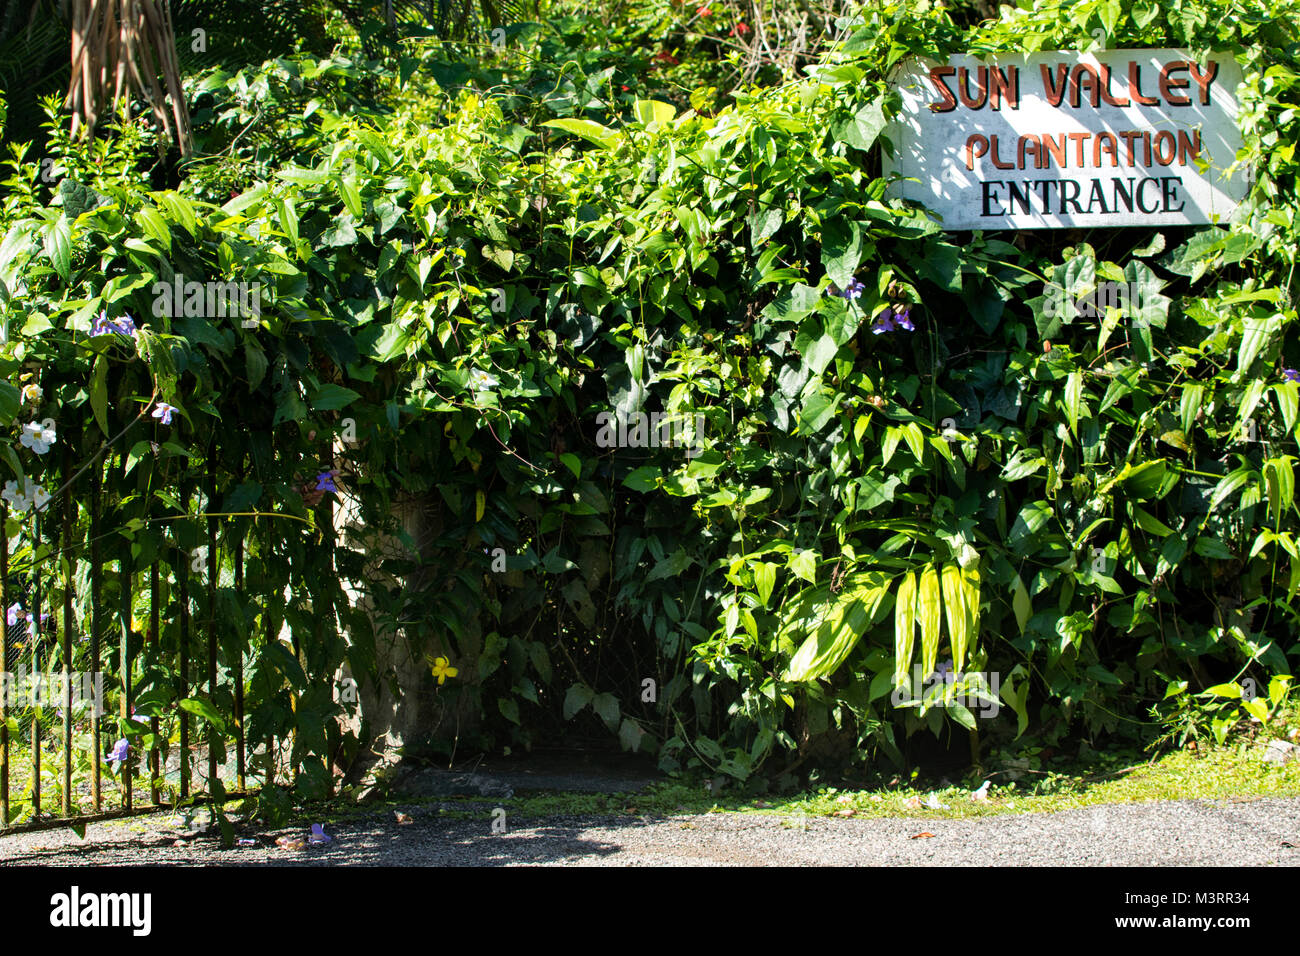 Segno di ingresso alla Val di Sole plantation contro la vegetazione lussureggiante di Ocho Rios, Giamaica, West Indies, dei Caraibi Foto Stock